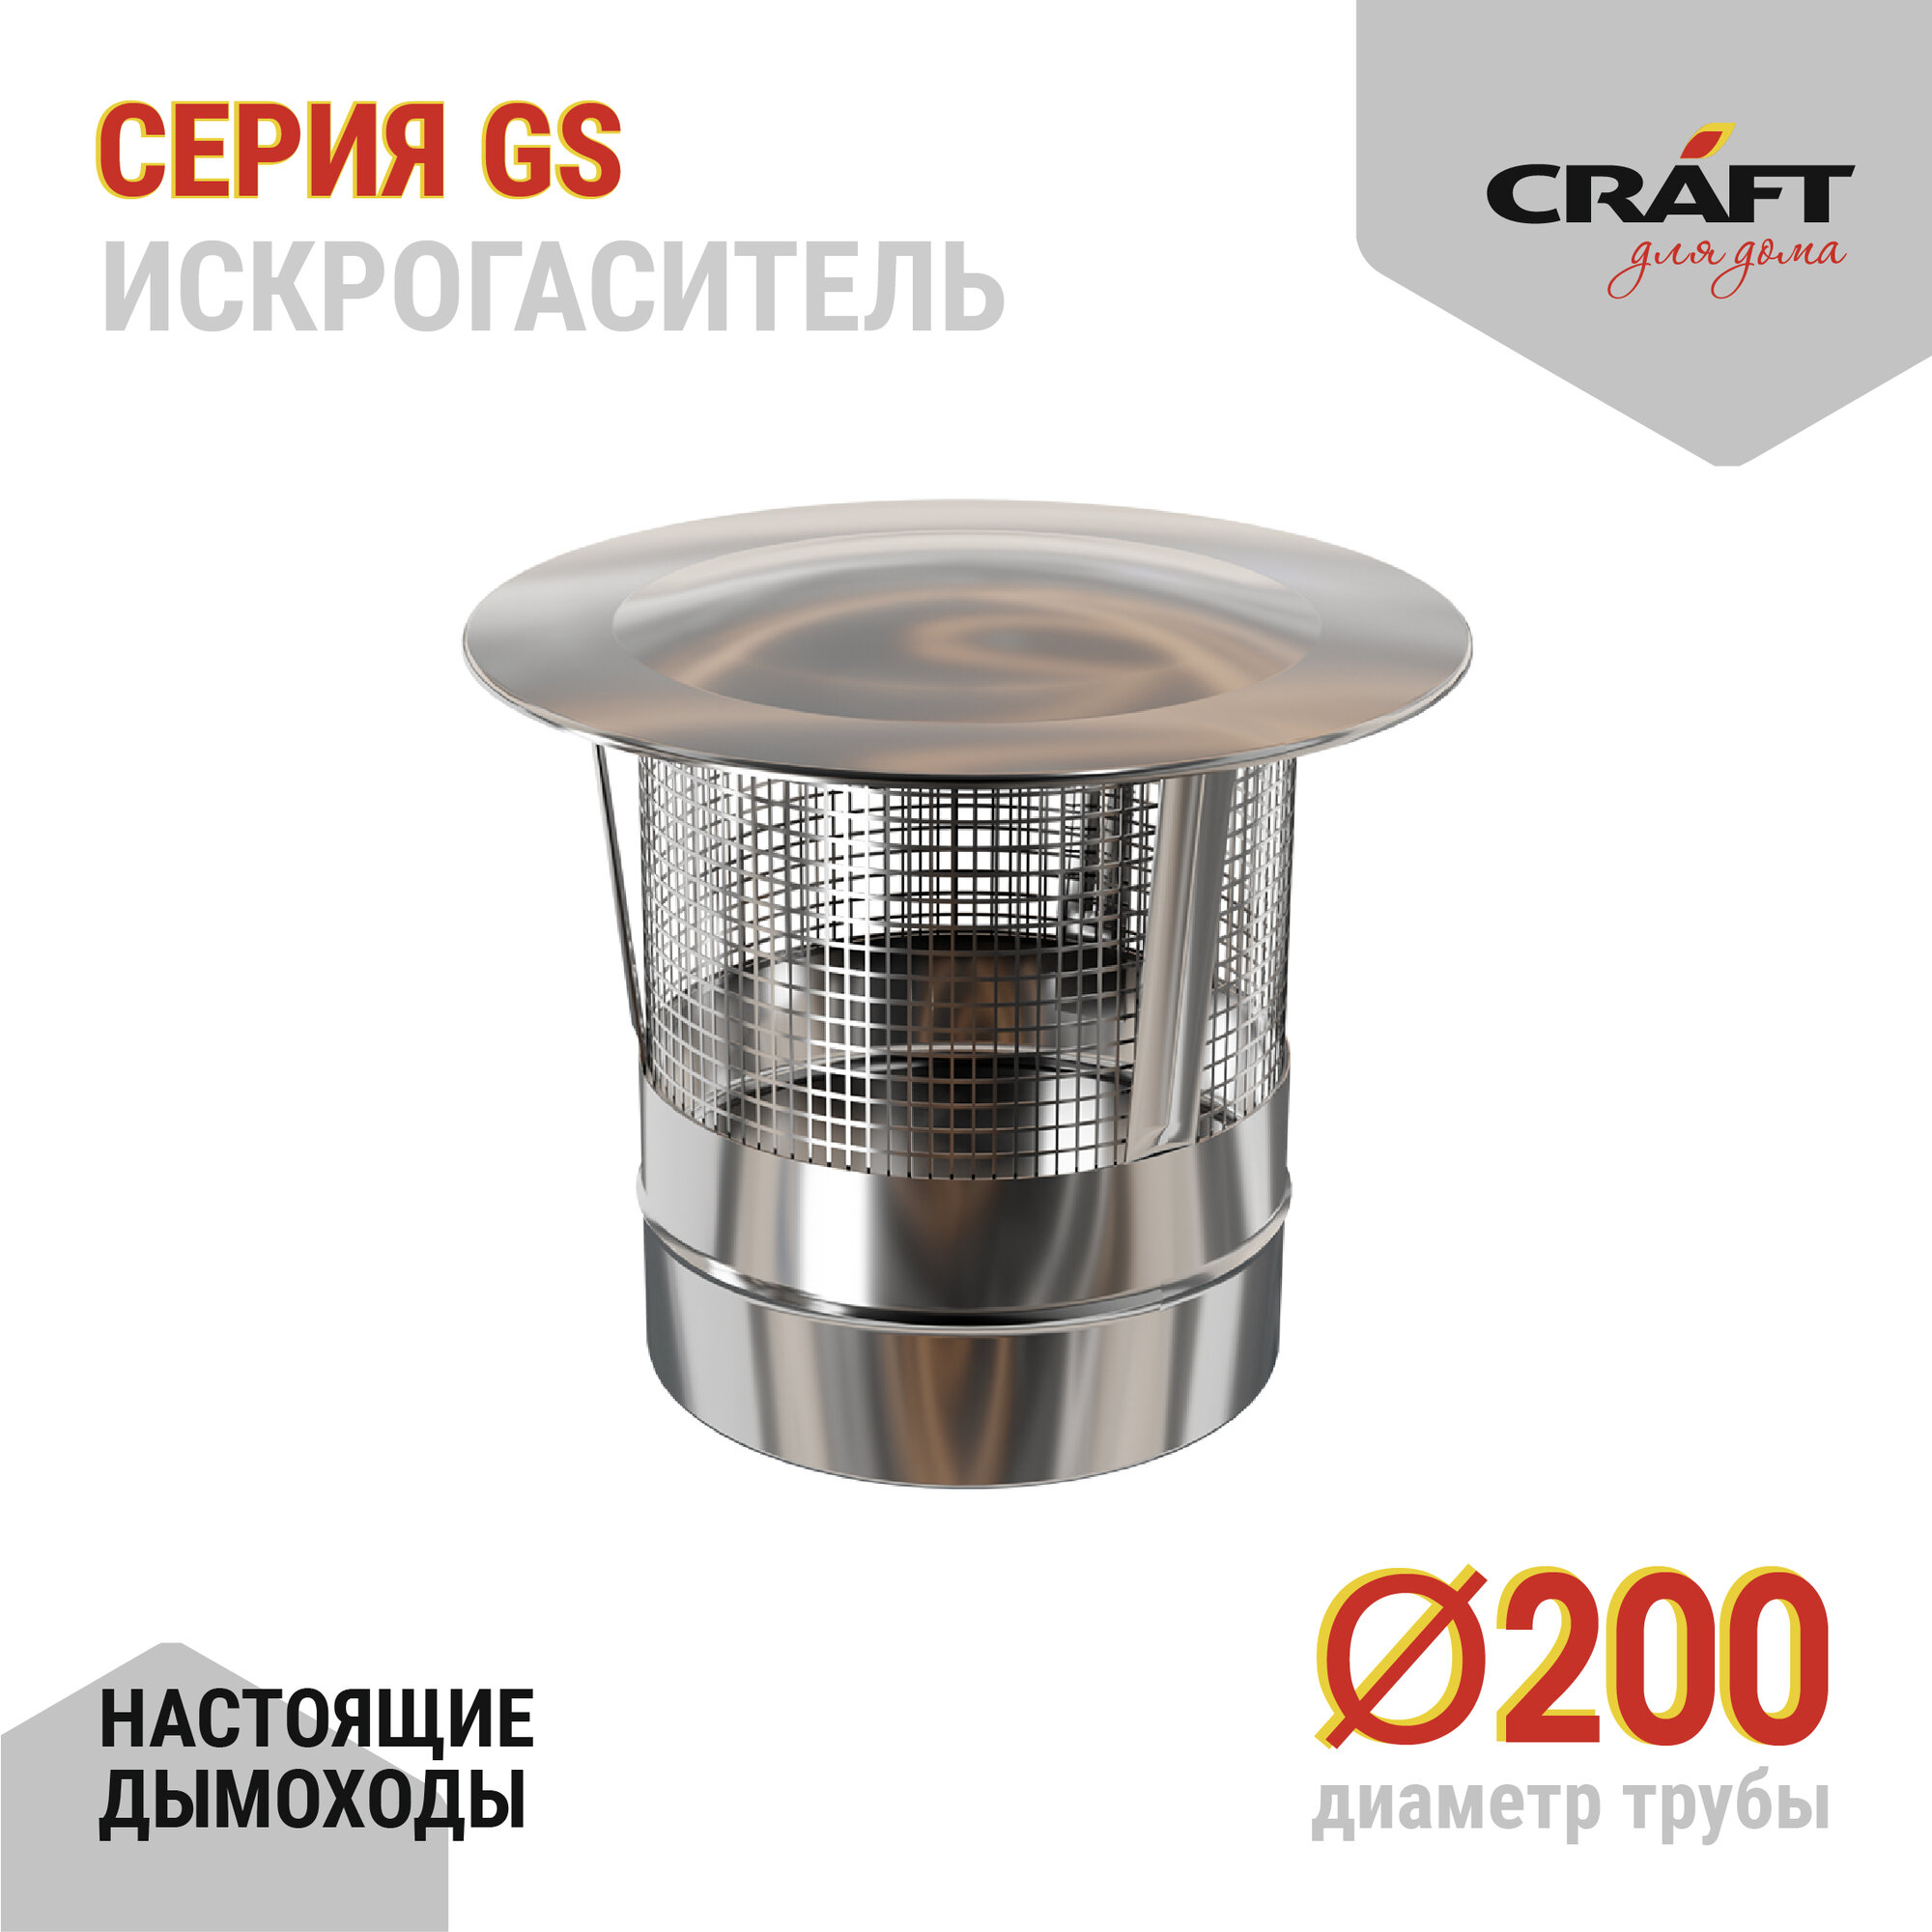 Craft GS искрогаситель (316/0,5) Ф200